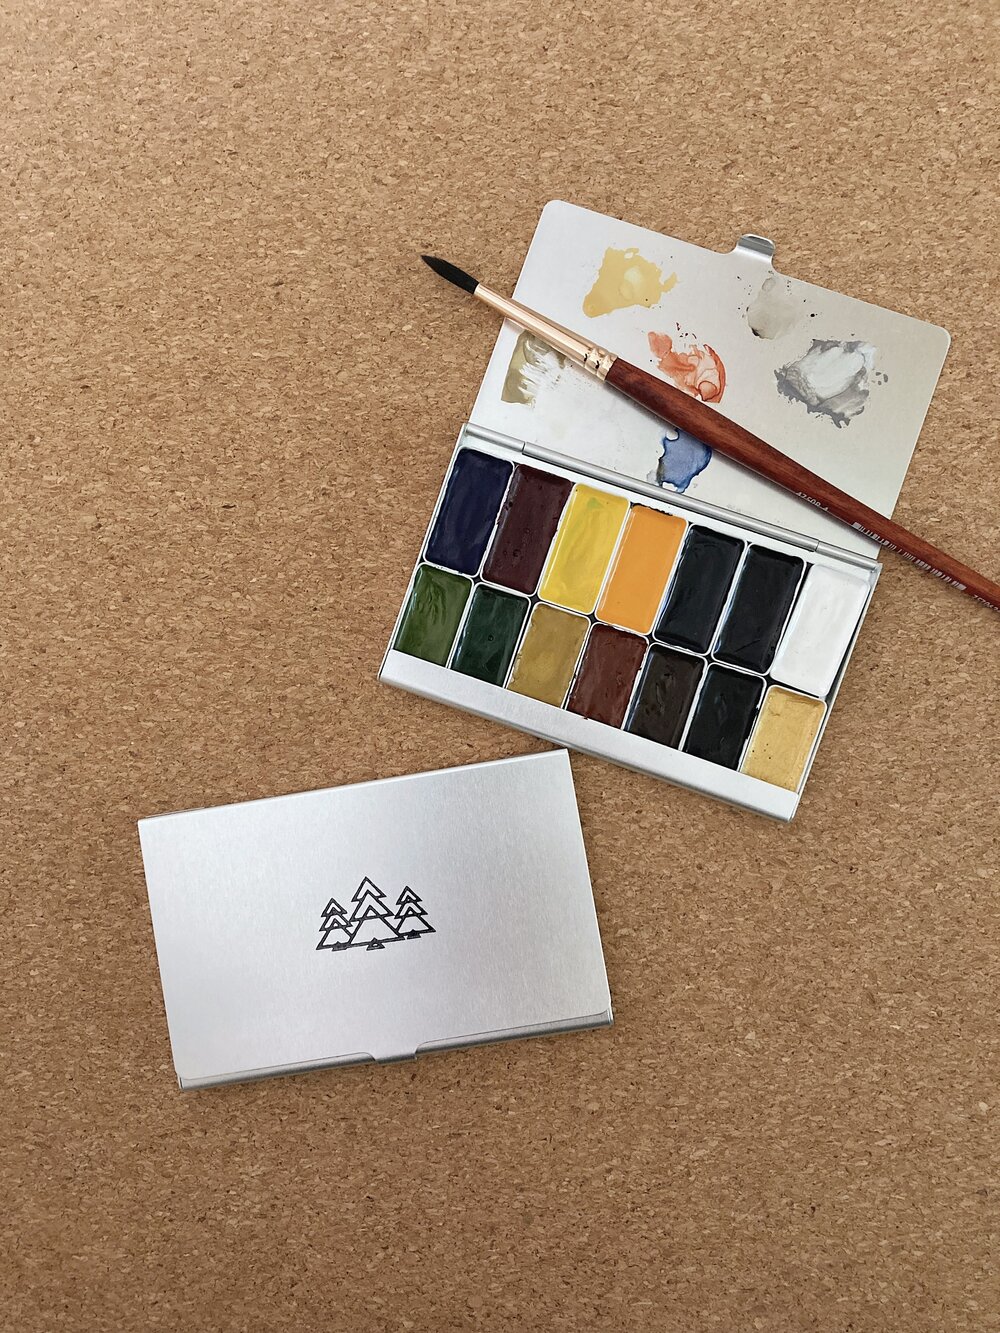 Watercolor Paint Kit - Shop Online